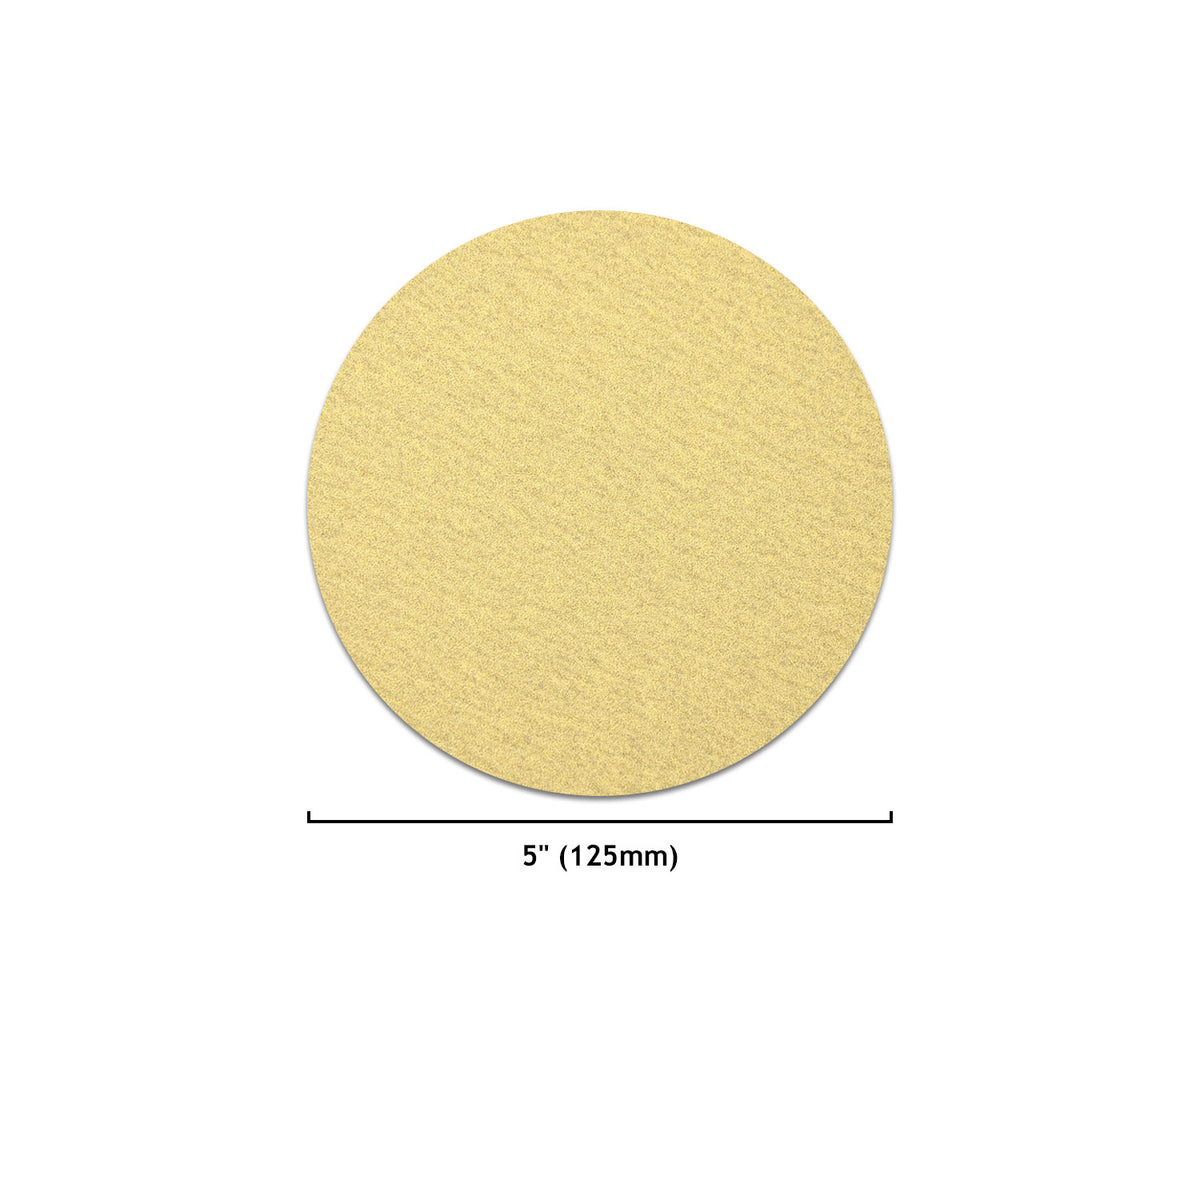 5" (125mm) Yellow Hook&Loop Sanding Discs for Dry Sanding (60-1000 Grit), 1 Disc